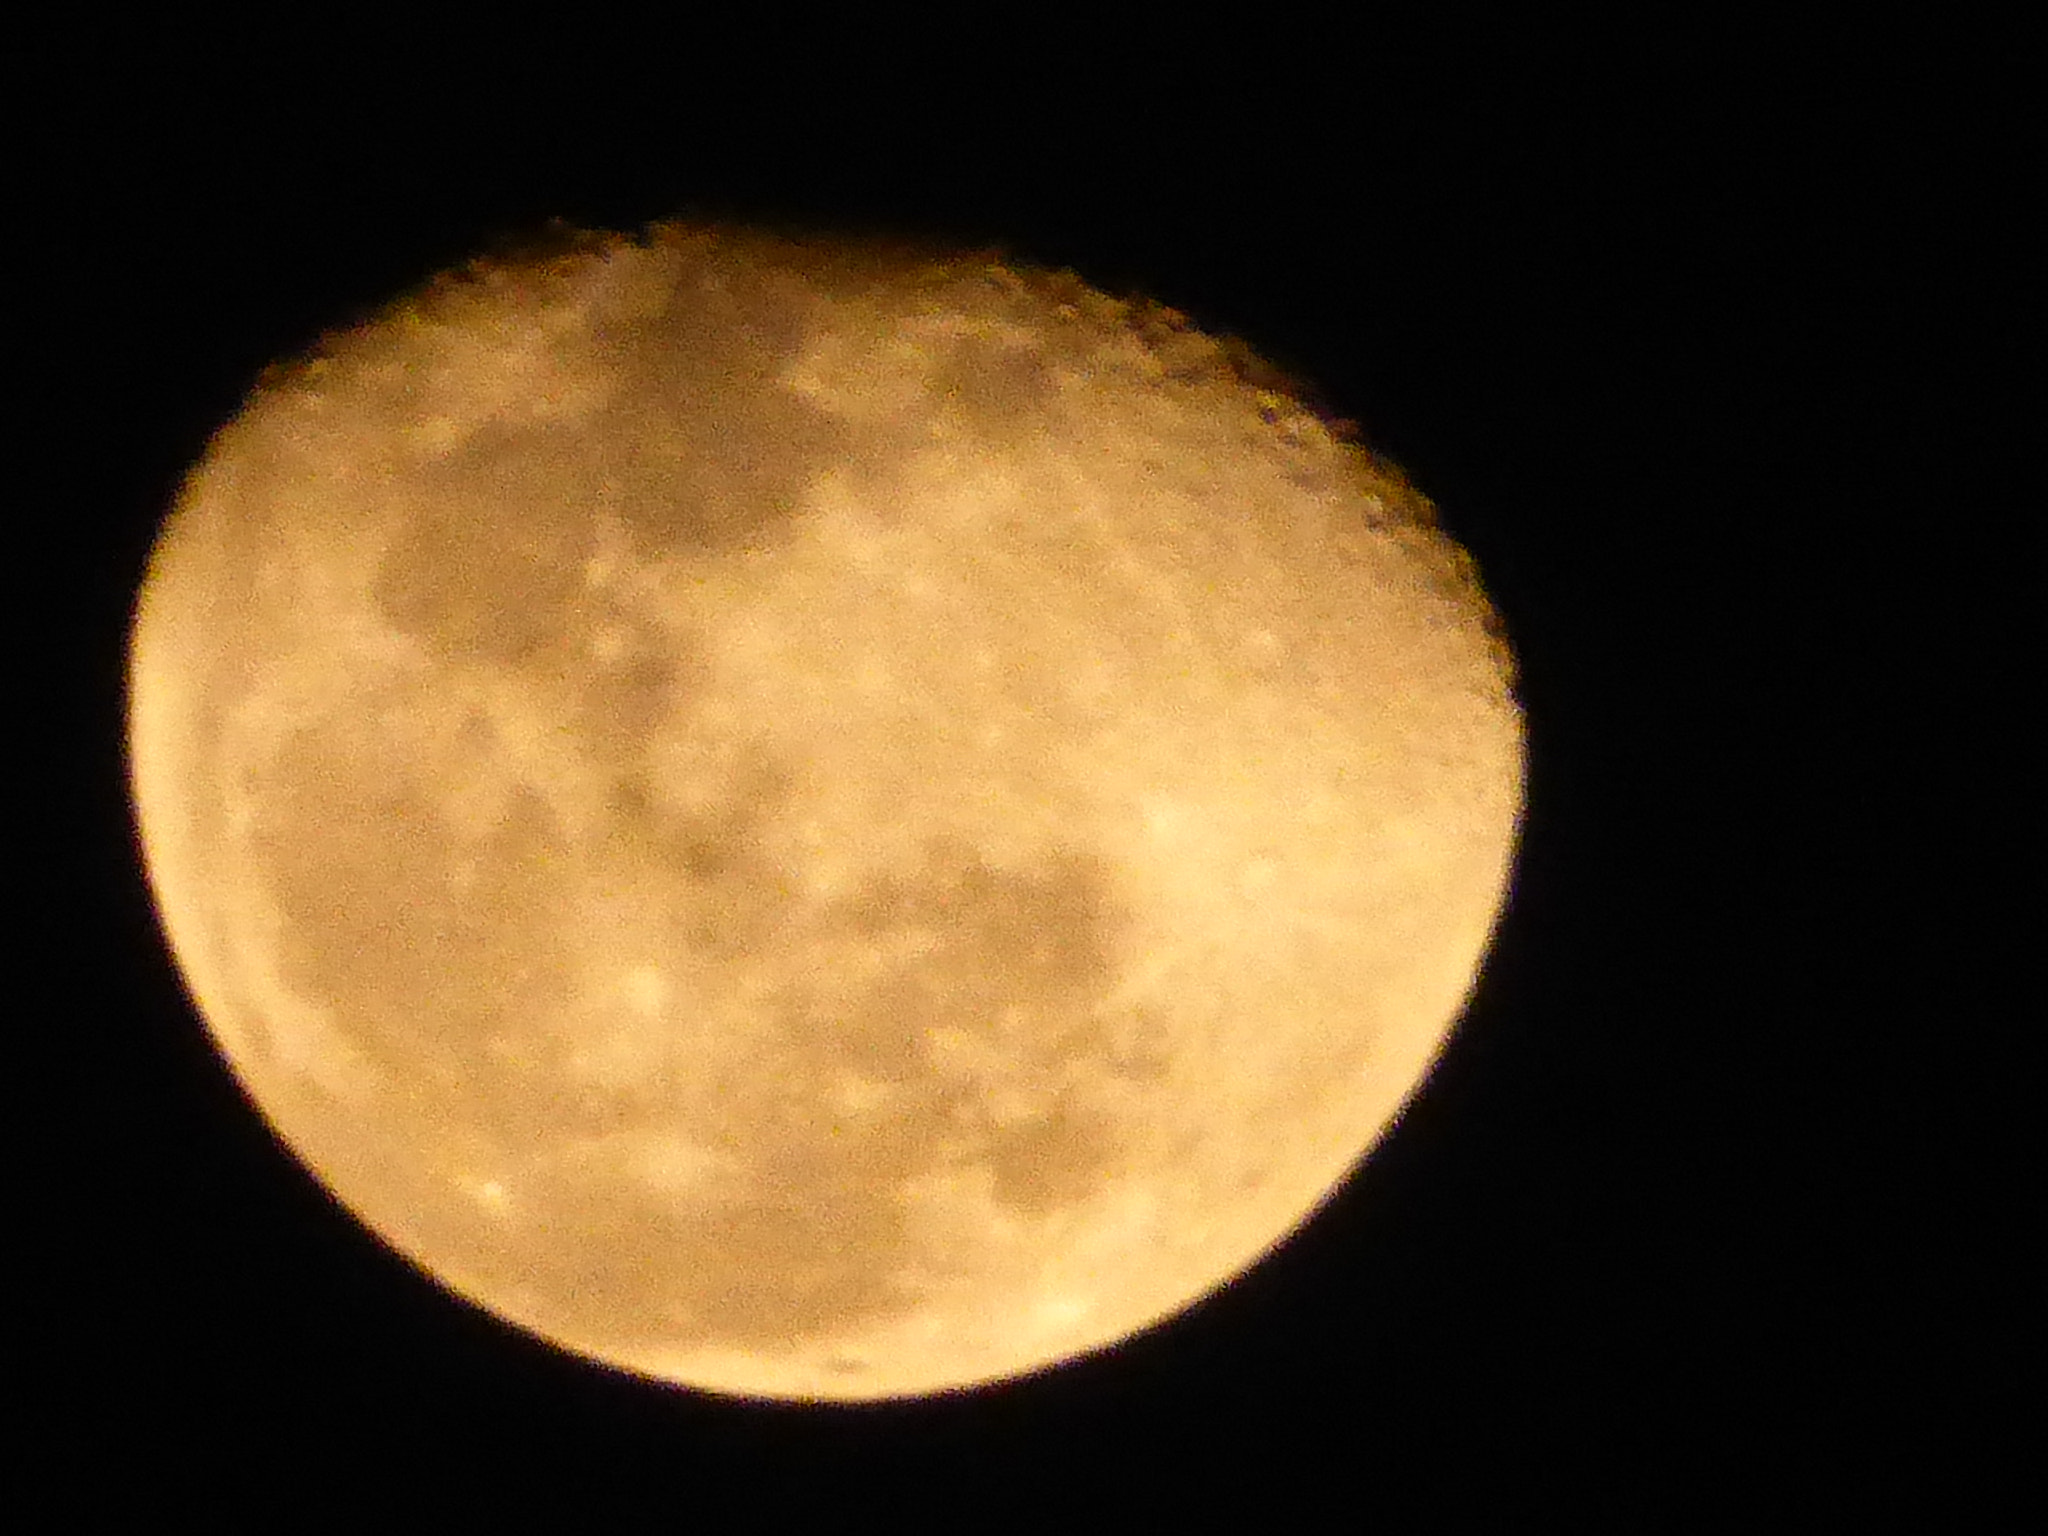 Panasonic Lumix DMC-ZS40 (Lumix DMC-TZ60) sample photo. The golden moon, shot taken this evening photography